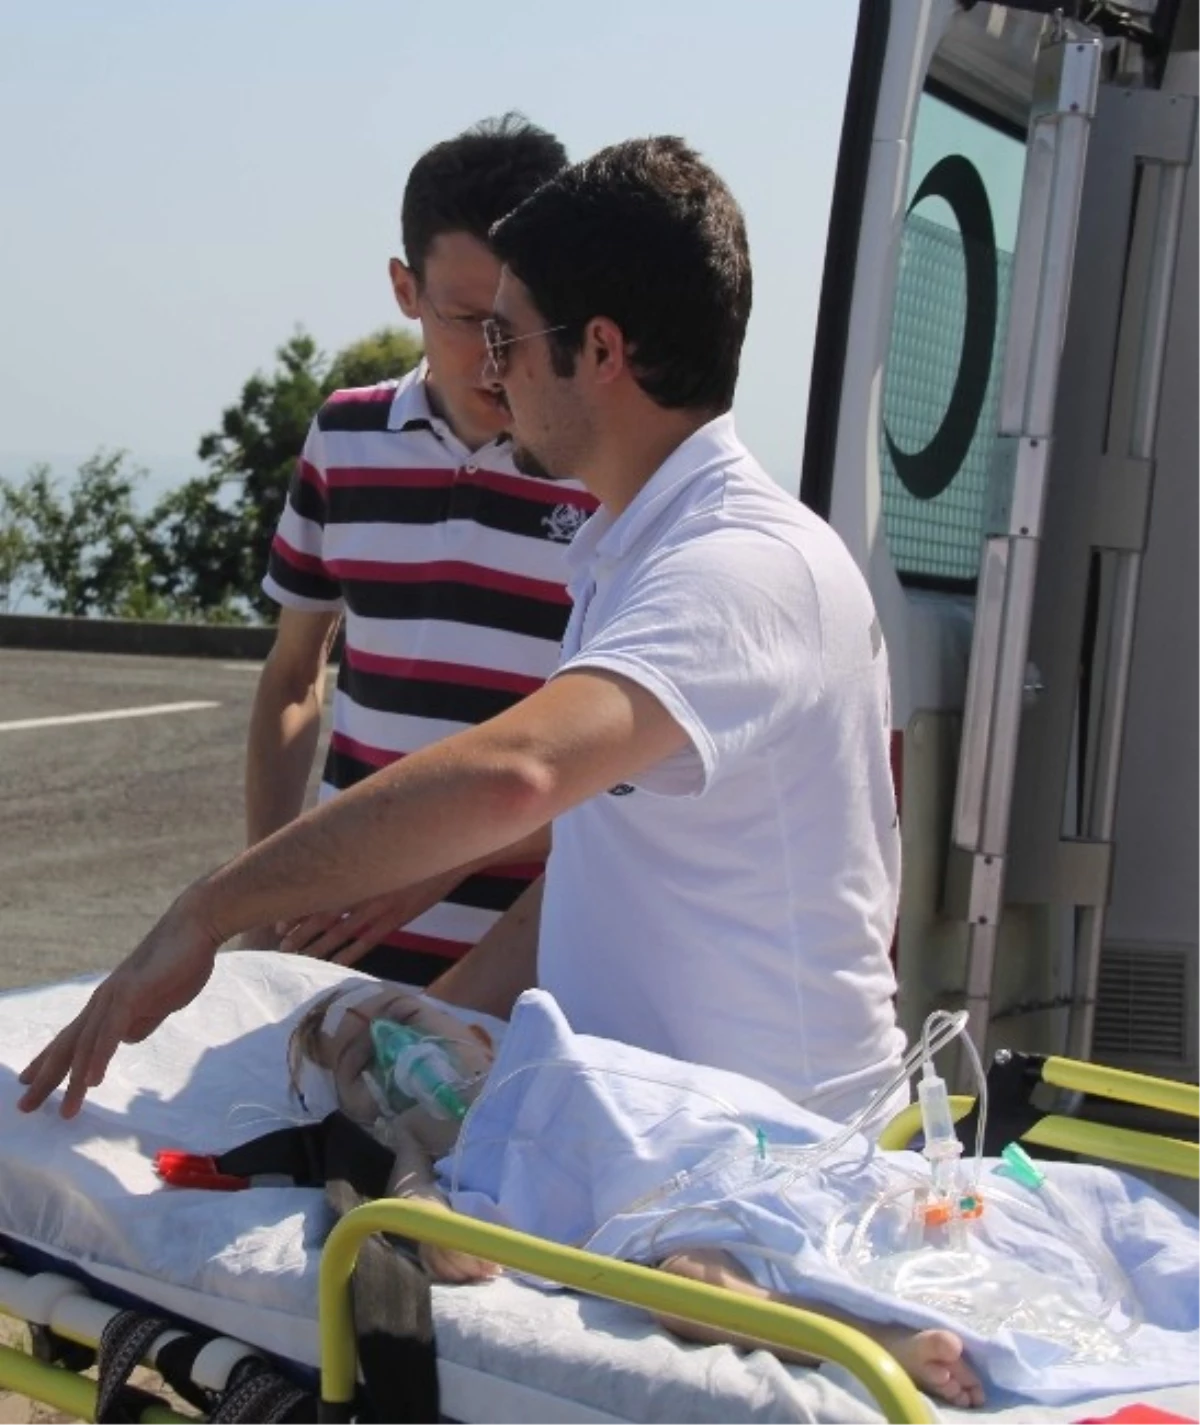 Havale Geçiren Bebeğin İmdadına Ambulans Helikopter Yetişti